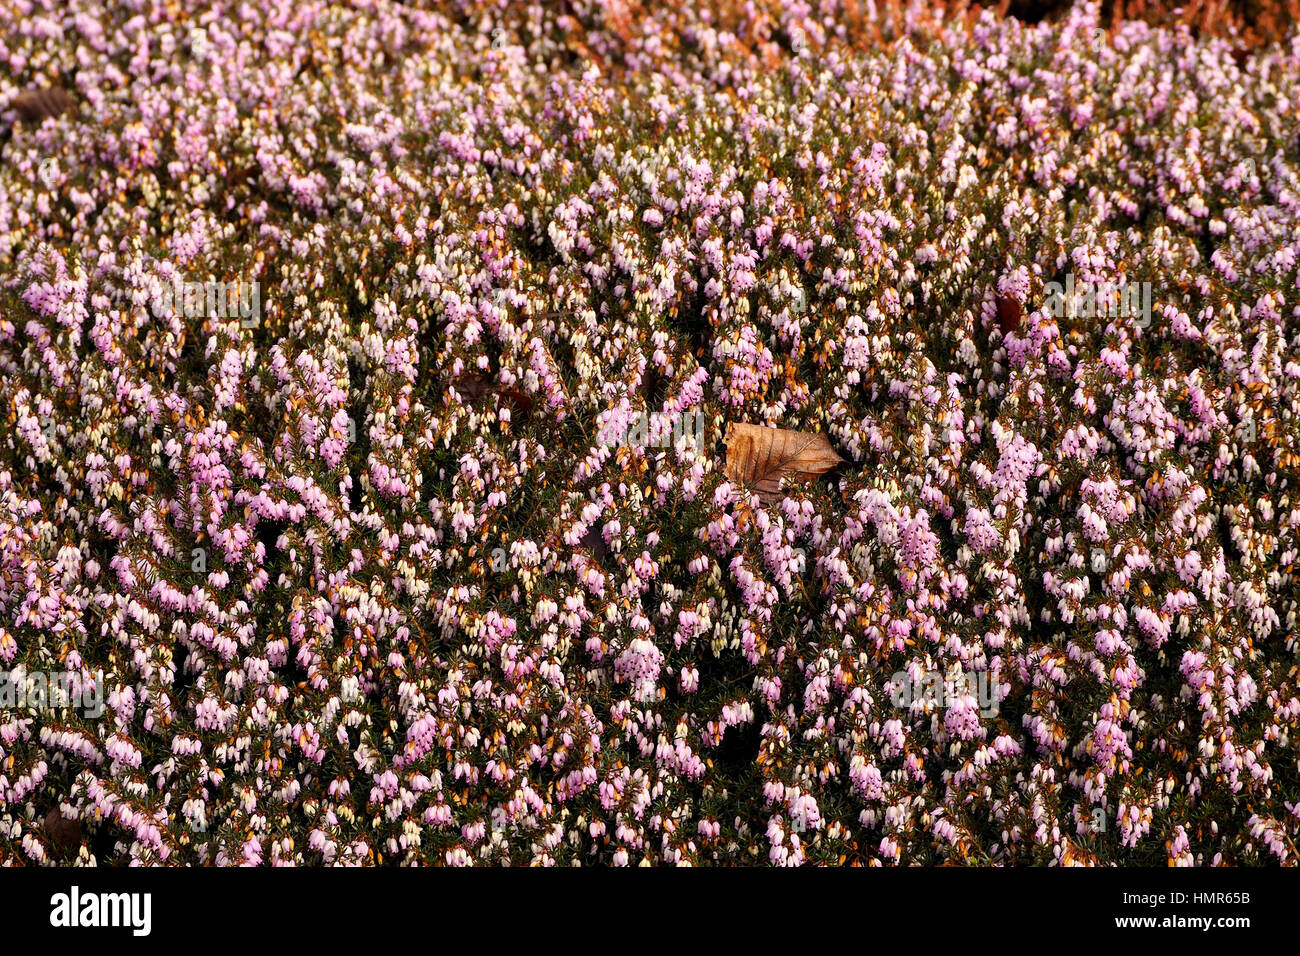 The heather Erica Carnea "James Backhouse provides winter colour in a shady garden border. Stock Photo